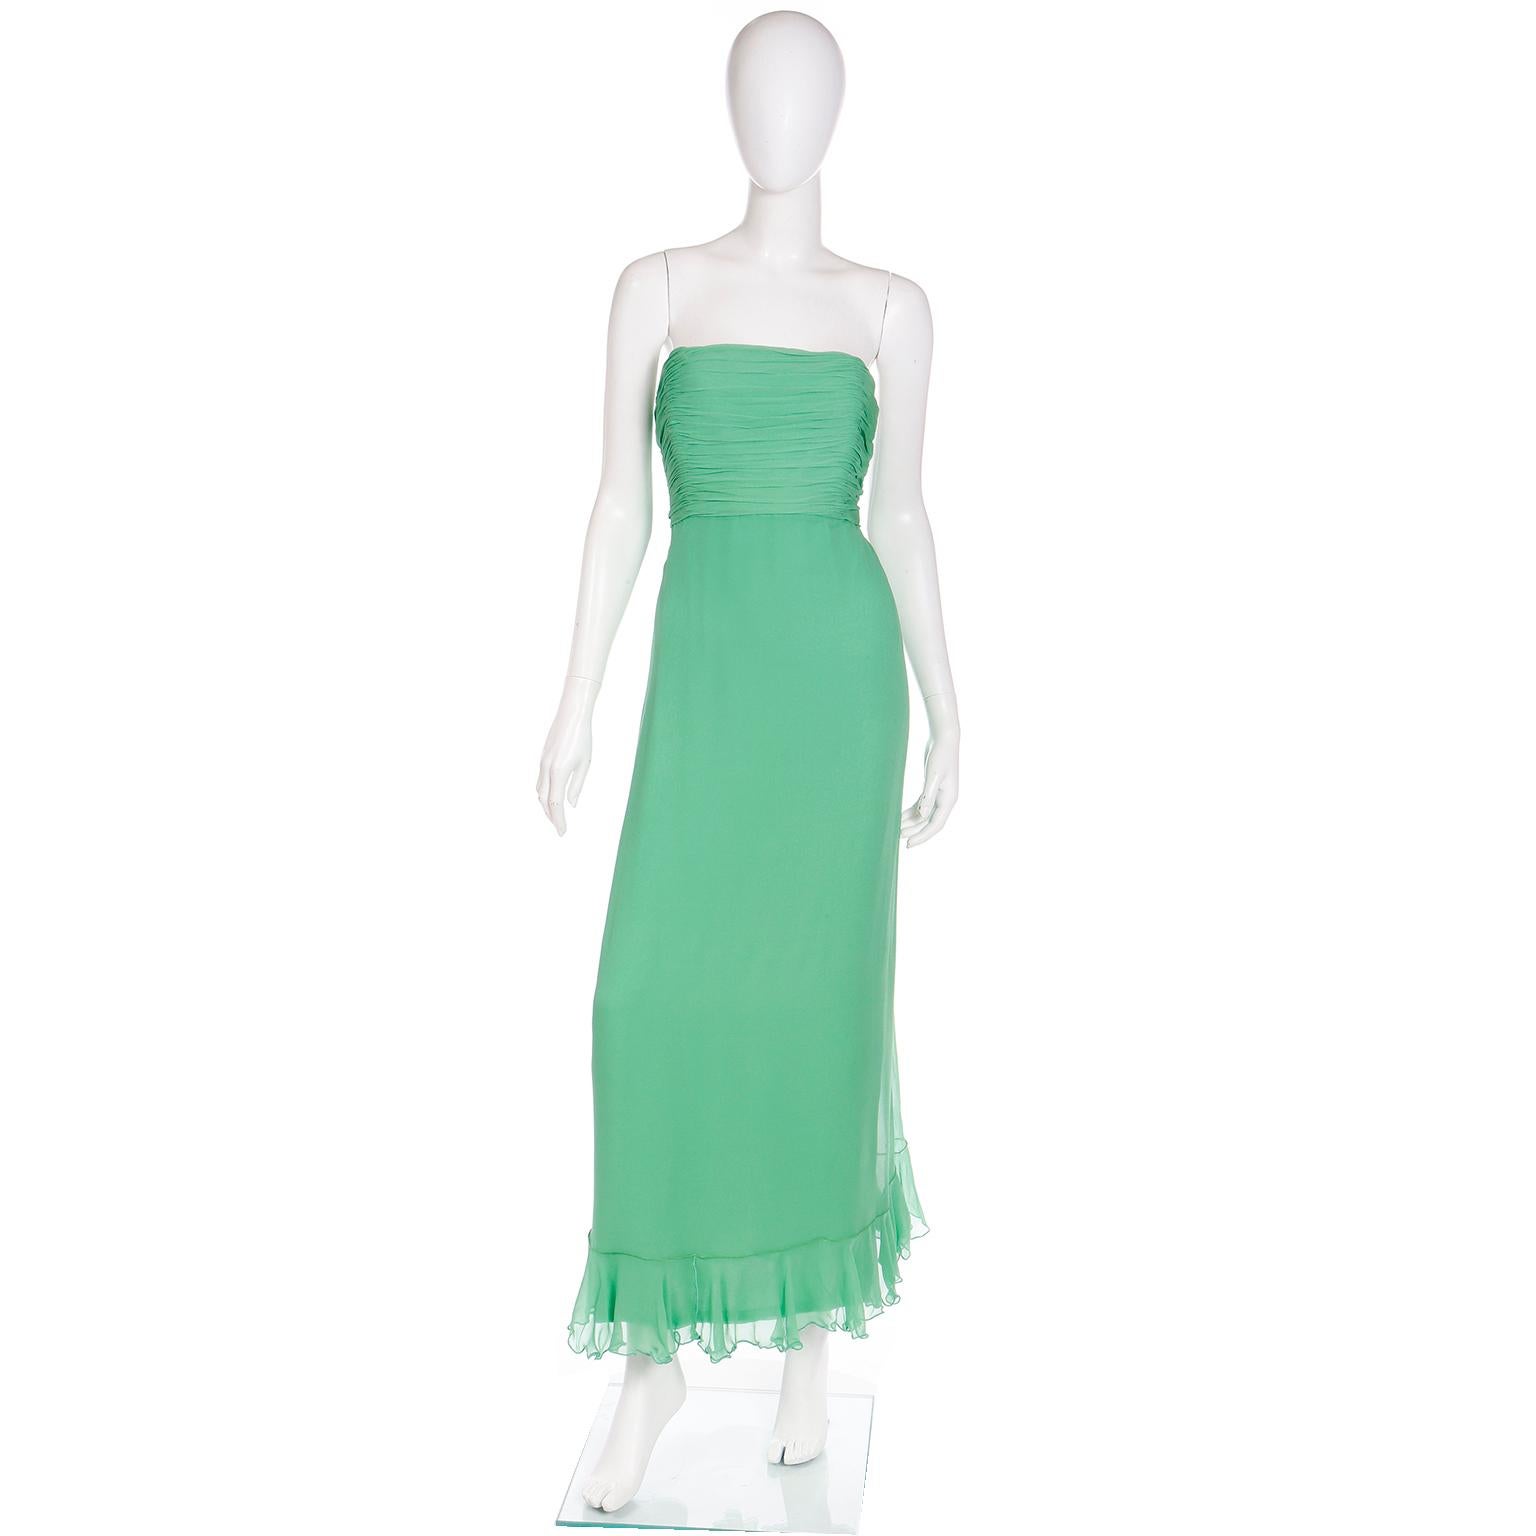 Dieses elegante, bodenlange Kleid aus grünem Seidenchiffon von Wayne Clark wurde in der Couture-Boutique Harriet Kassman in Washington DC gekauft. Das Kleid ist trägerlos, hat ein gerafftes Mieder und wird mit einem Rüschenschal geliefert, der auf